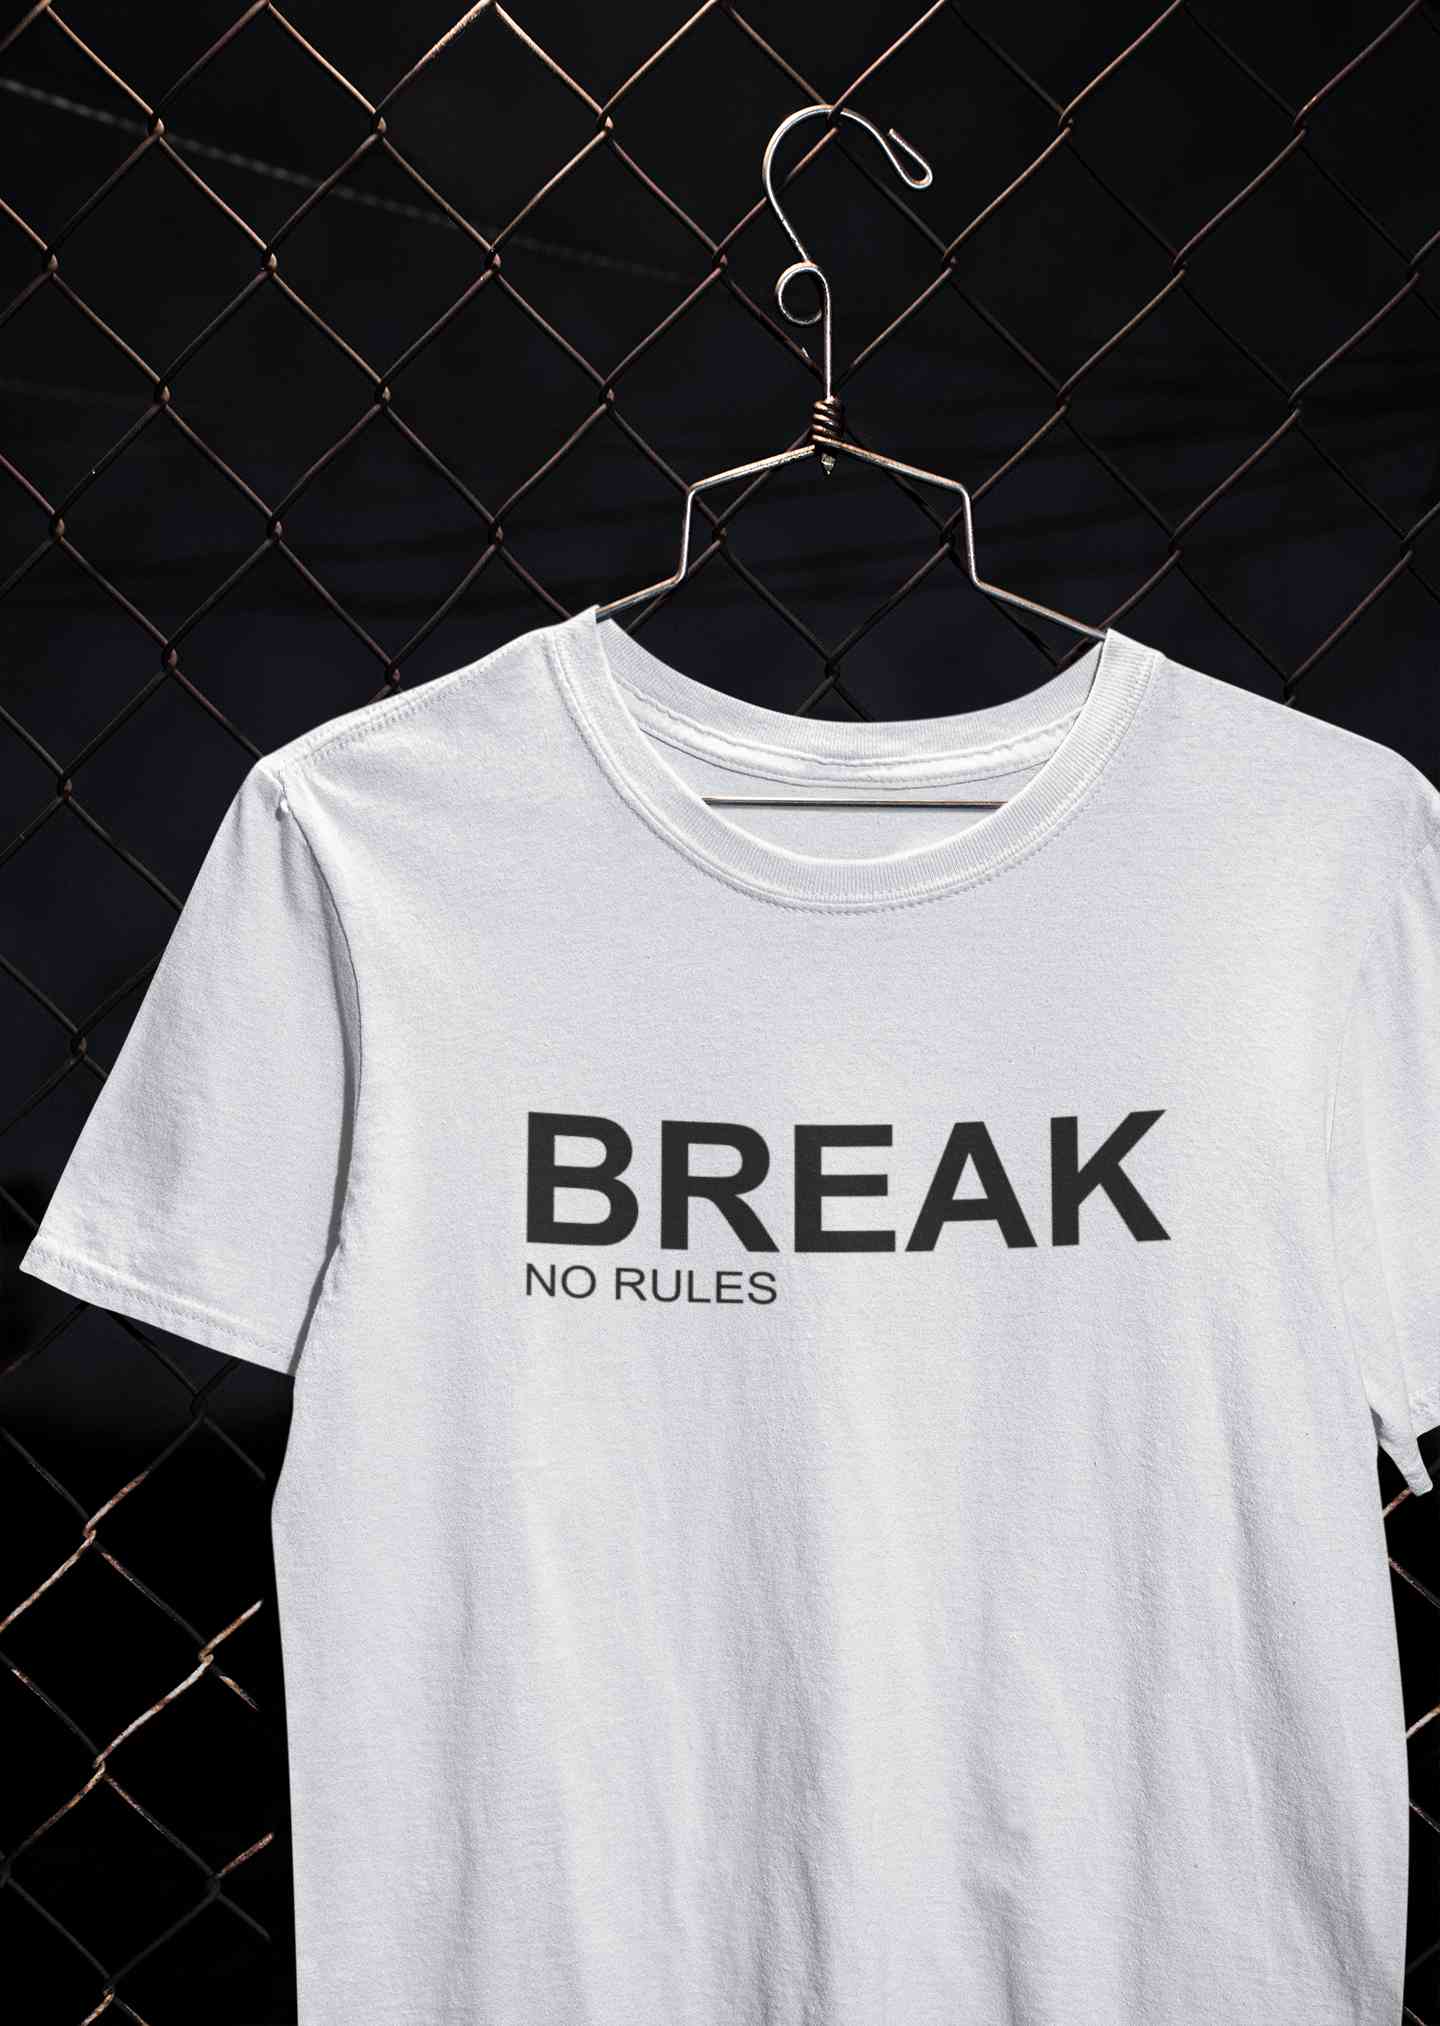 Break No Rules Mens Half Sleeves T-shirt- FunkyTeesClub